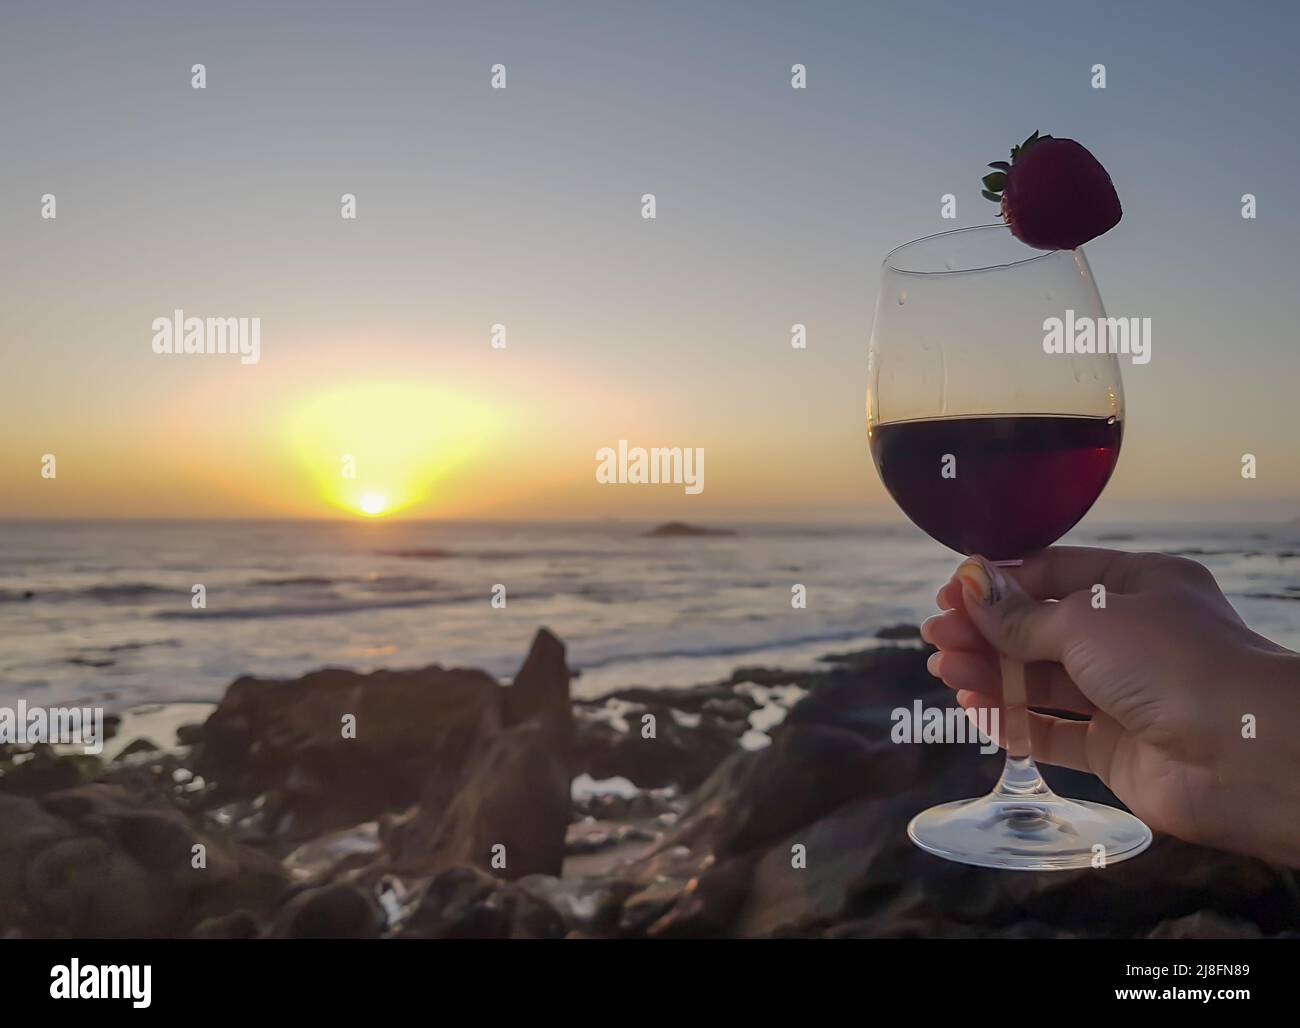 Frau mit einem Glas Rotwein und Erdbeere am Strand. Sonnenuntergang wunderbare Zeit Stockfoto